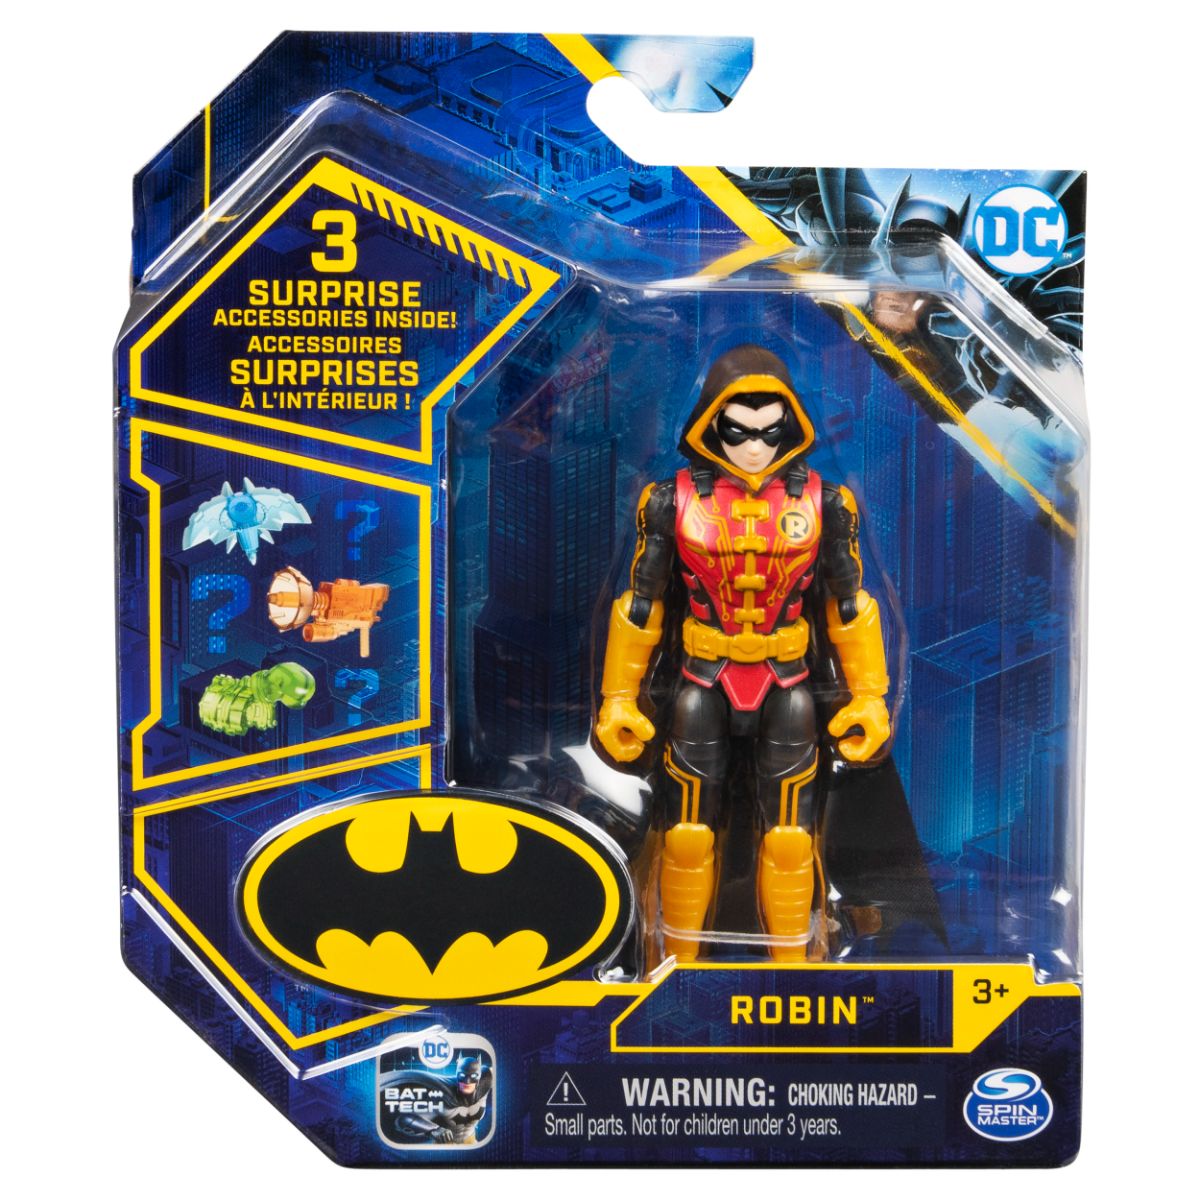 Set Figurina cu accesorii surpriza Batman, Robin 20131338 Batman